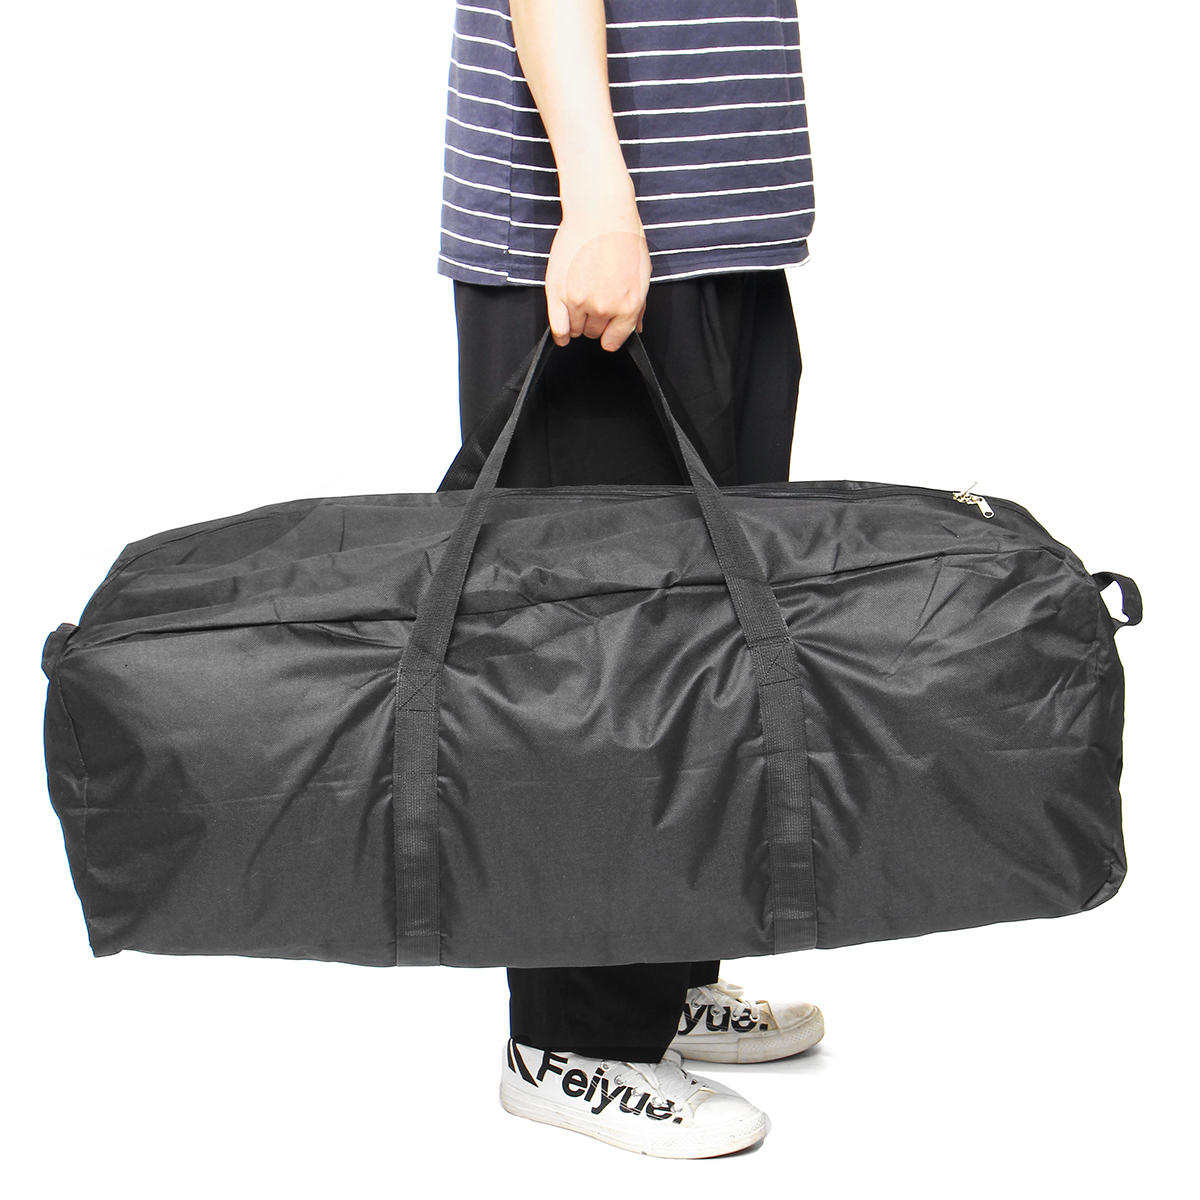 Φορητή πτυσσόμενη αδιάβροχη τσάντα αποθήκευσης Υπαίθρια ταξίδια πεζοπορίας Αθλητικές τσάντες Τσάντες-S / M / L